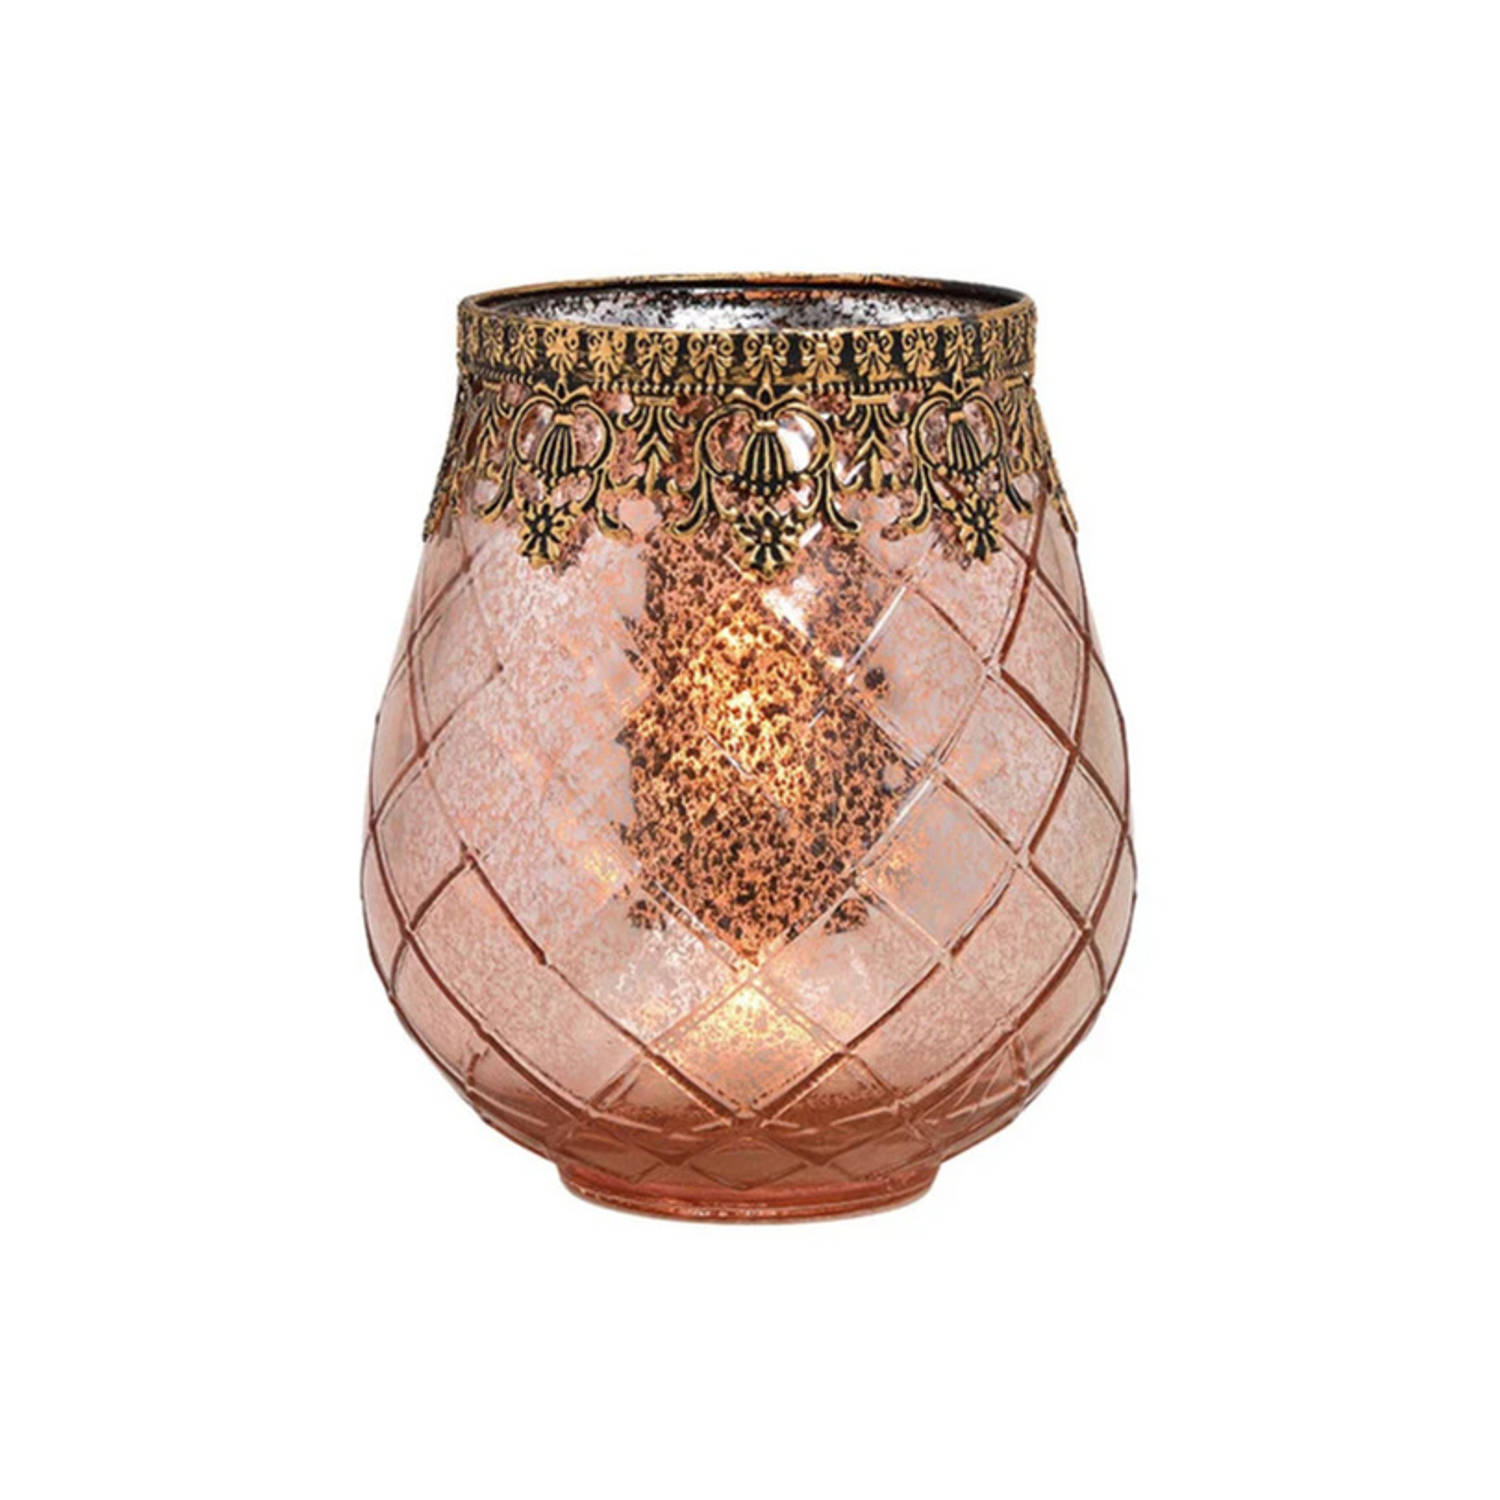 Glazen Design Windlicht-kaarsenhouder In De Kleur Rose Goud Met Formaat 16 X 18 X 16 Cm Voor Waxinel